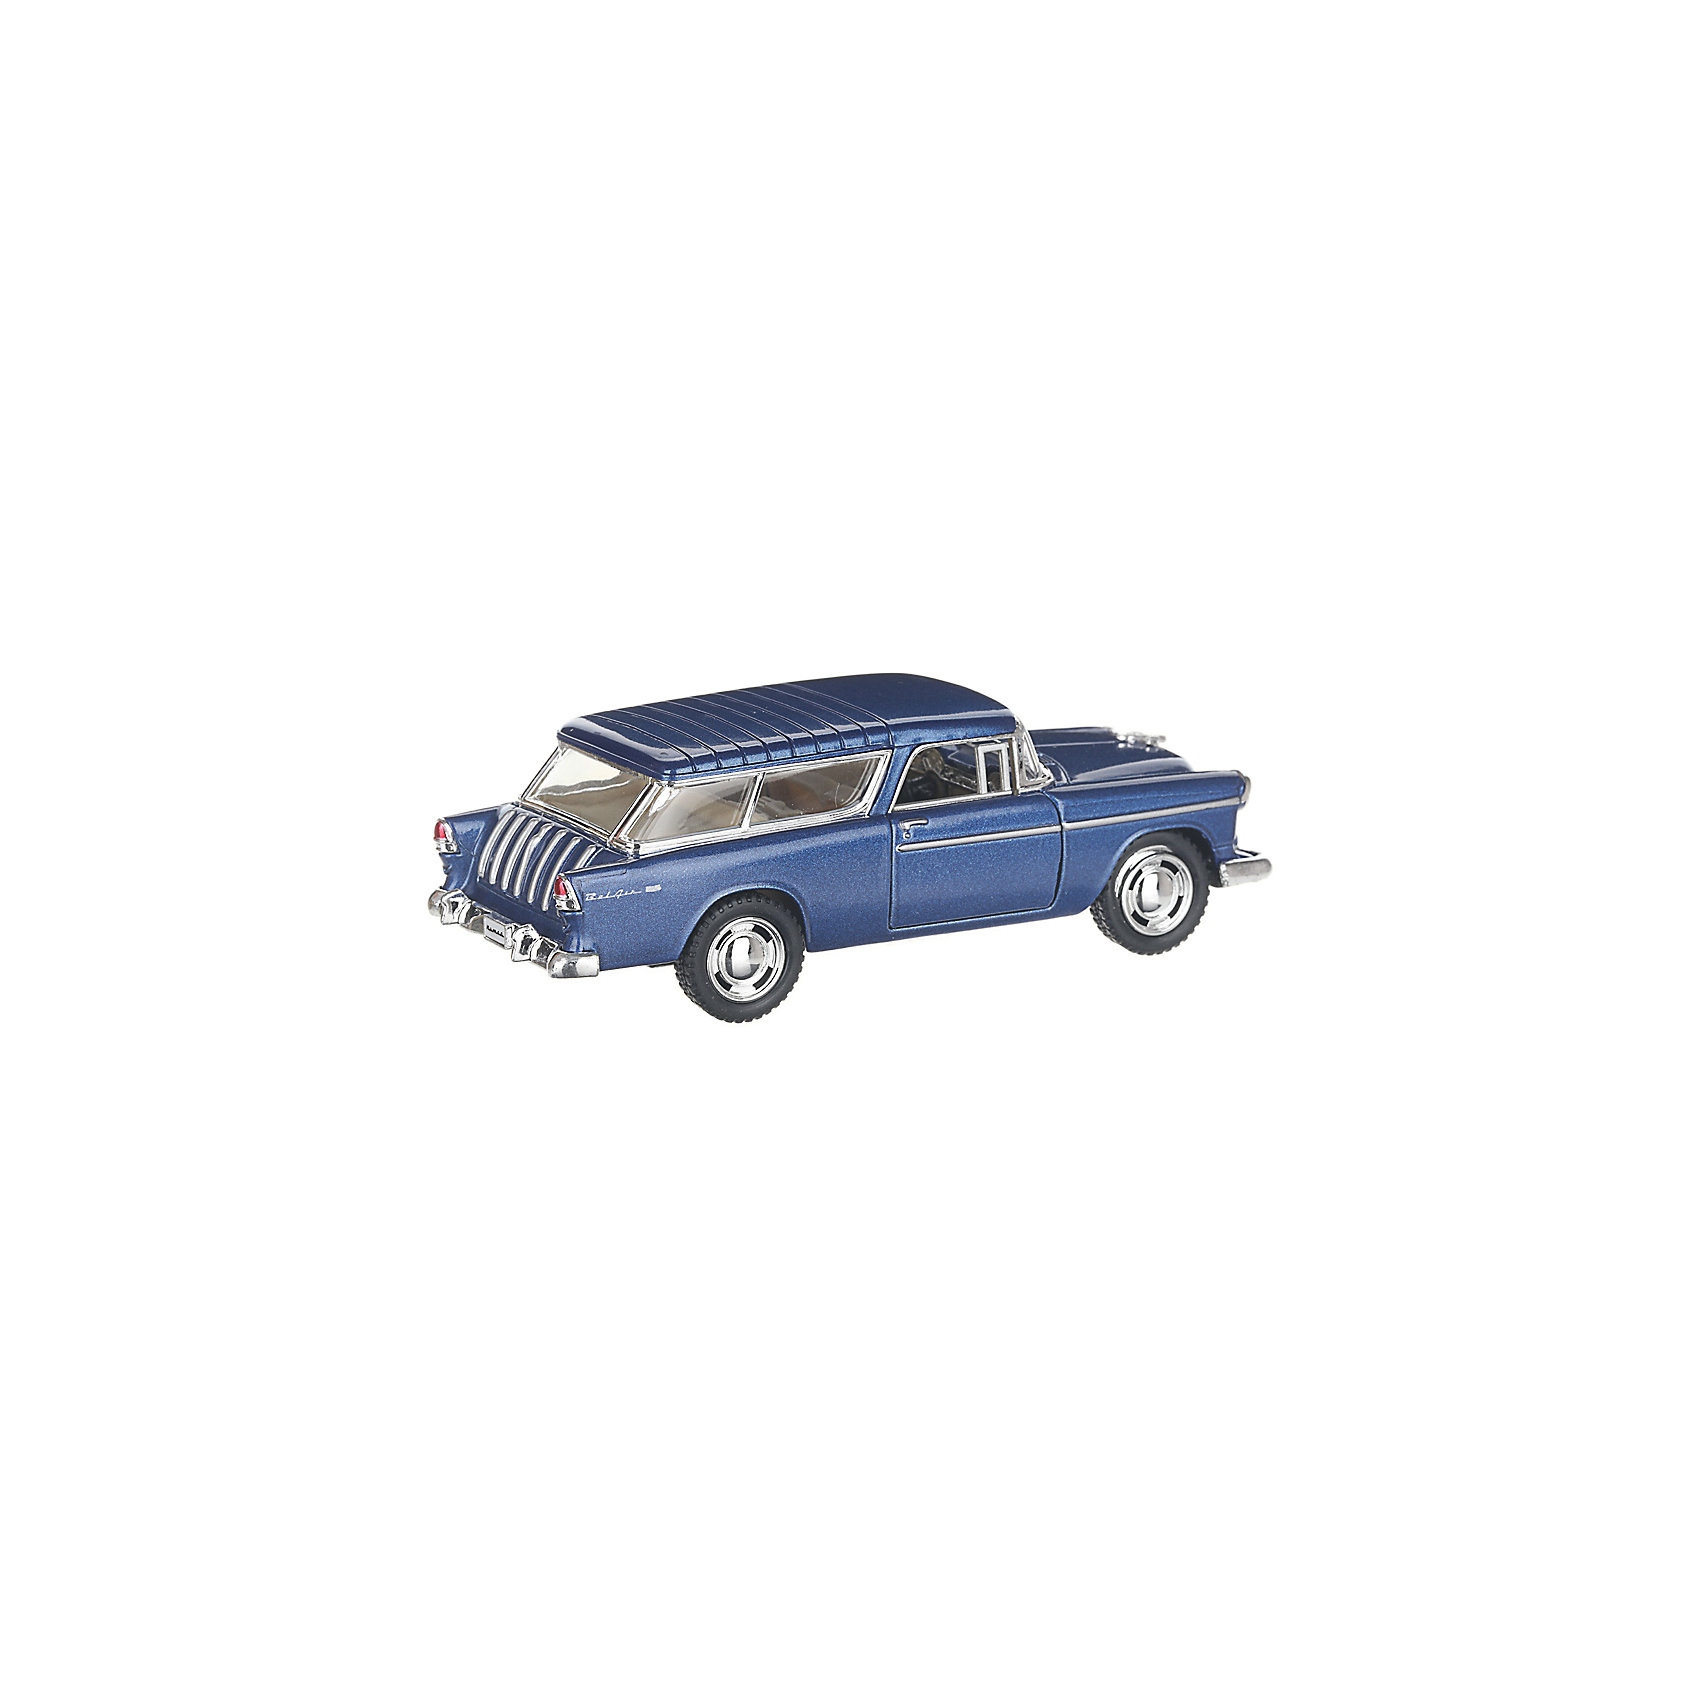 Коллекционная машинка Chevrolet Nomad hardtop, синяя Serinity Toys 13232957